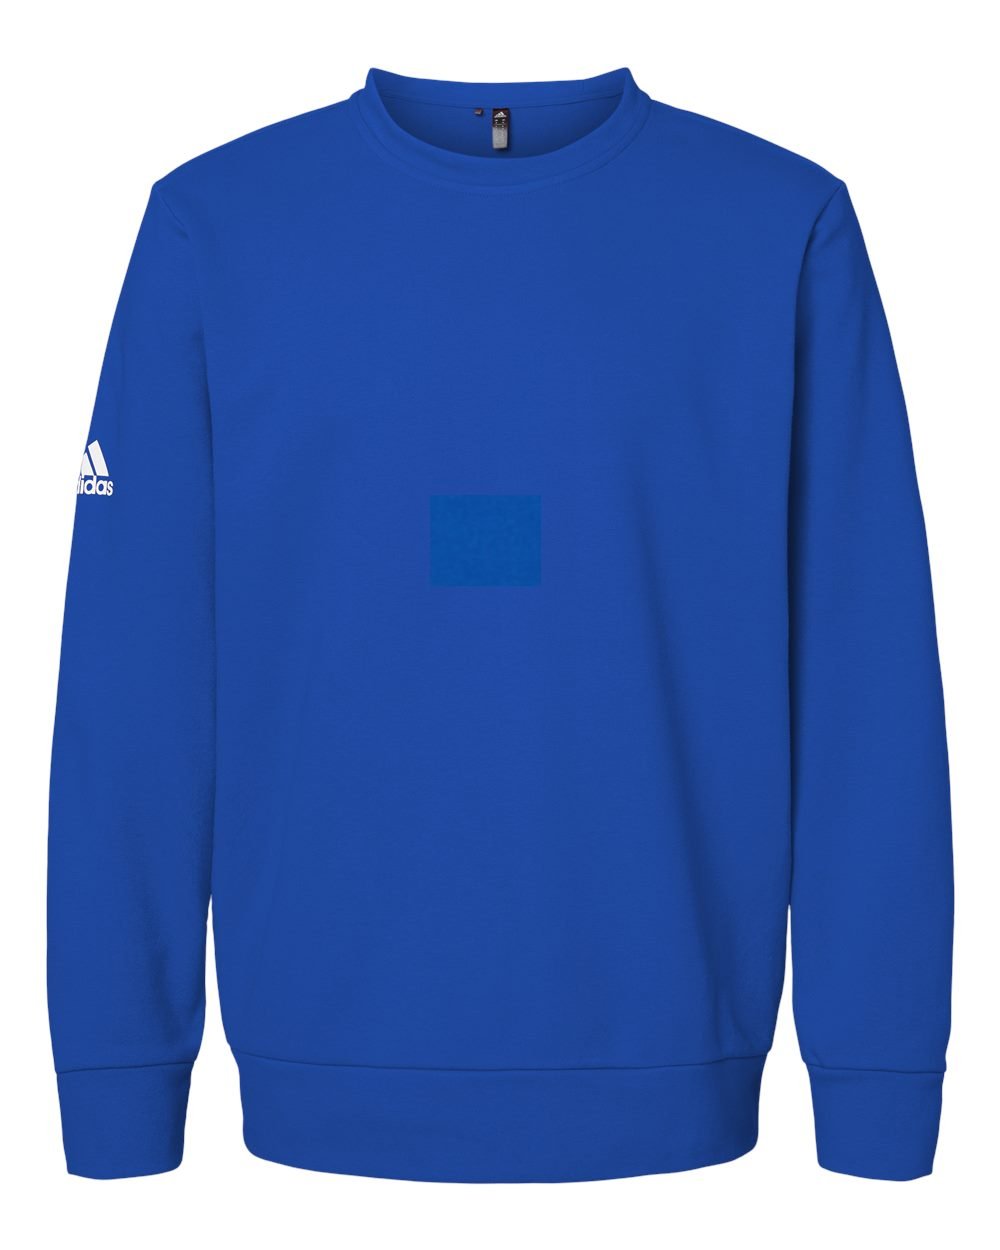 Adidas A434 Fleece Crewneck Sweatshirt #color_Collegiate Royal